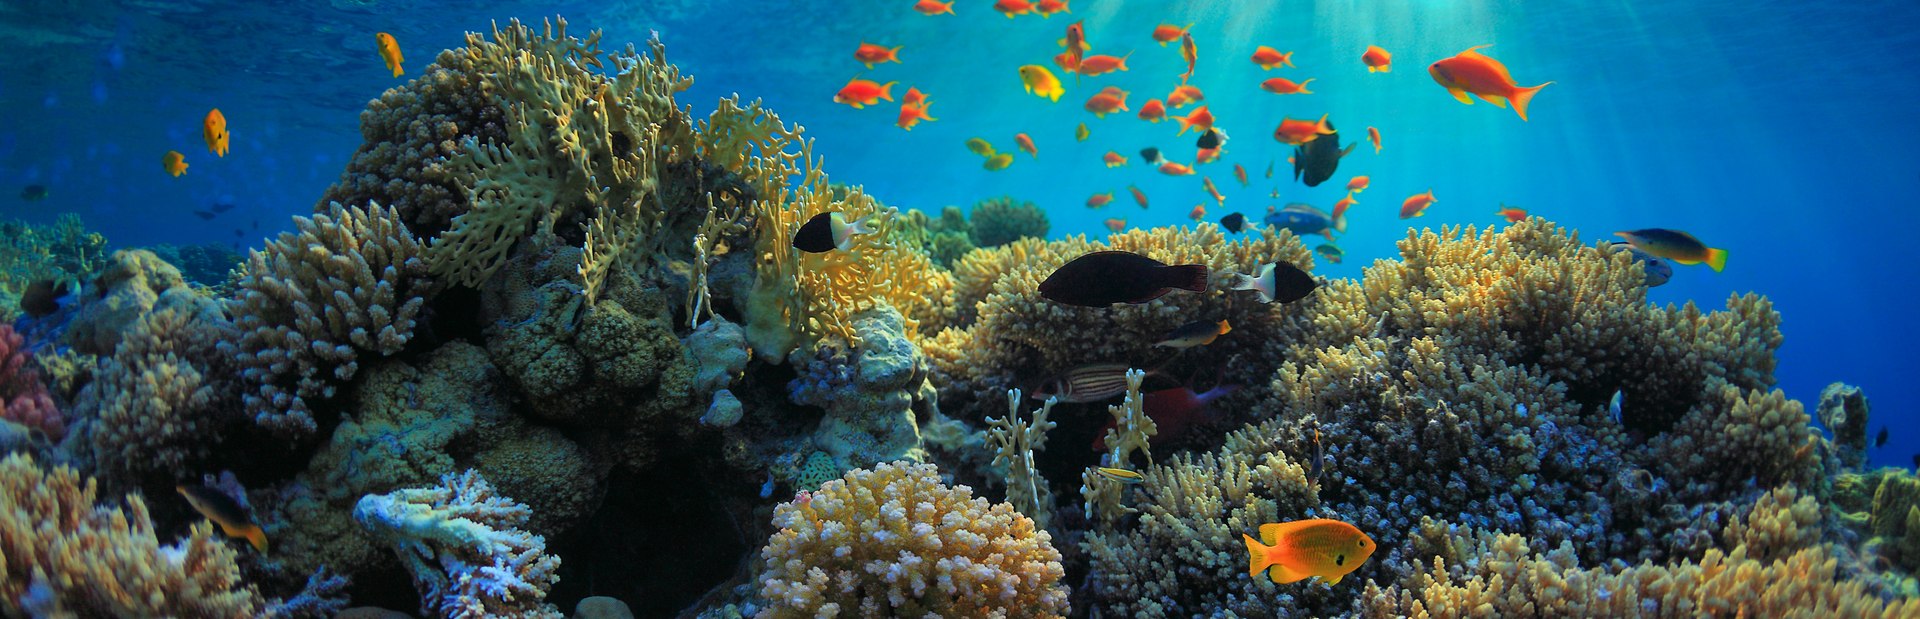 The Aquarium at O’Brien’s Cay Image 1